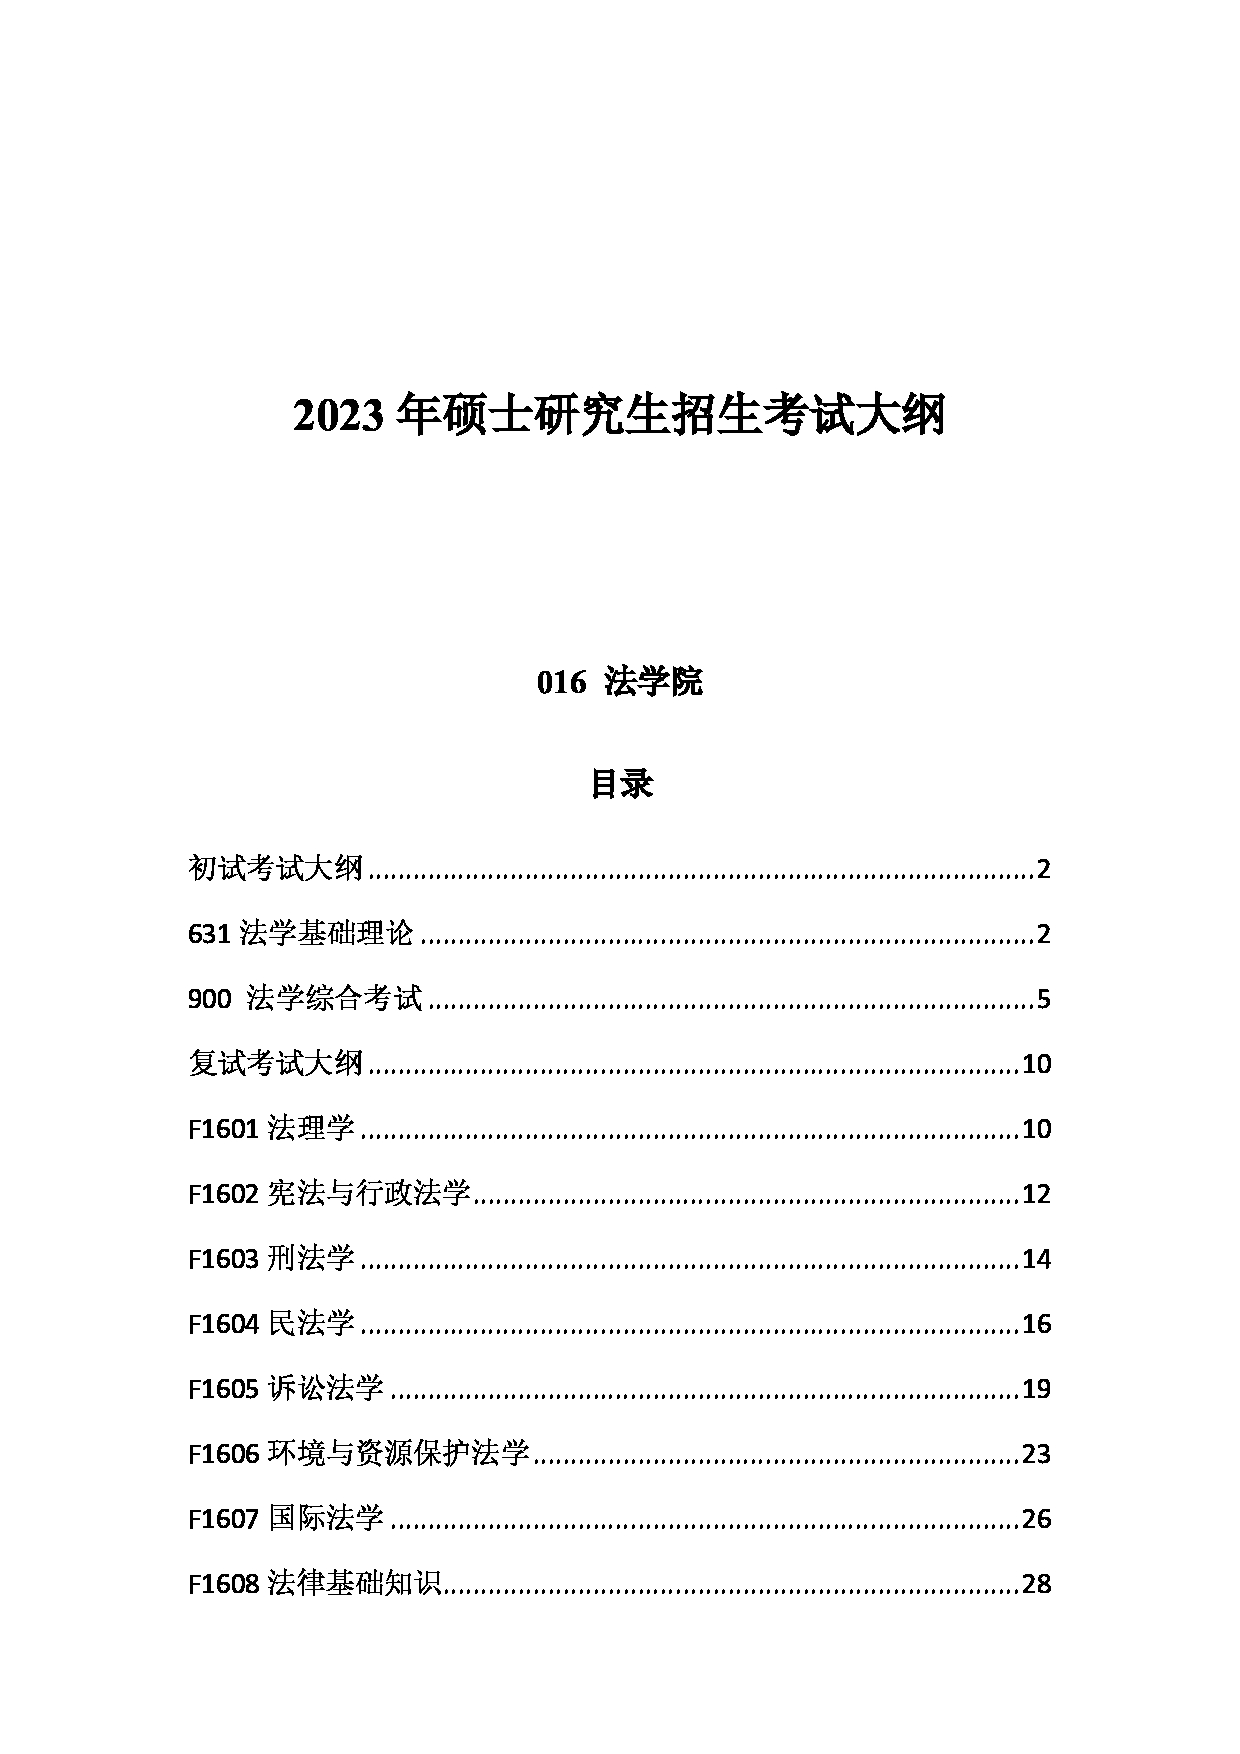 2023考研大纲：中国海洋大学2023年考研 016 法学院 考试大纲第1页